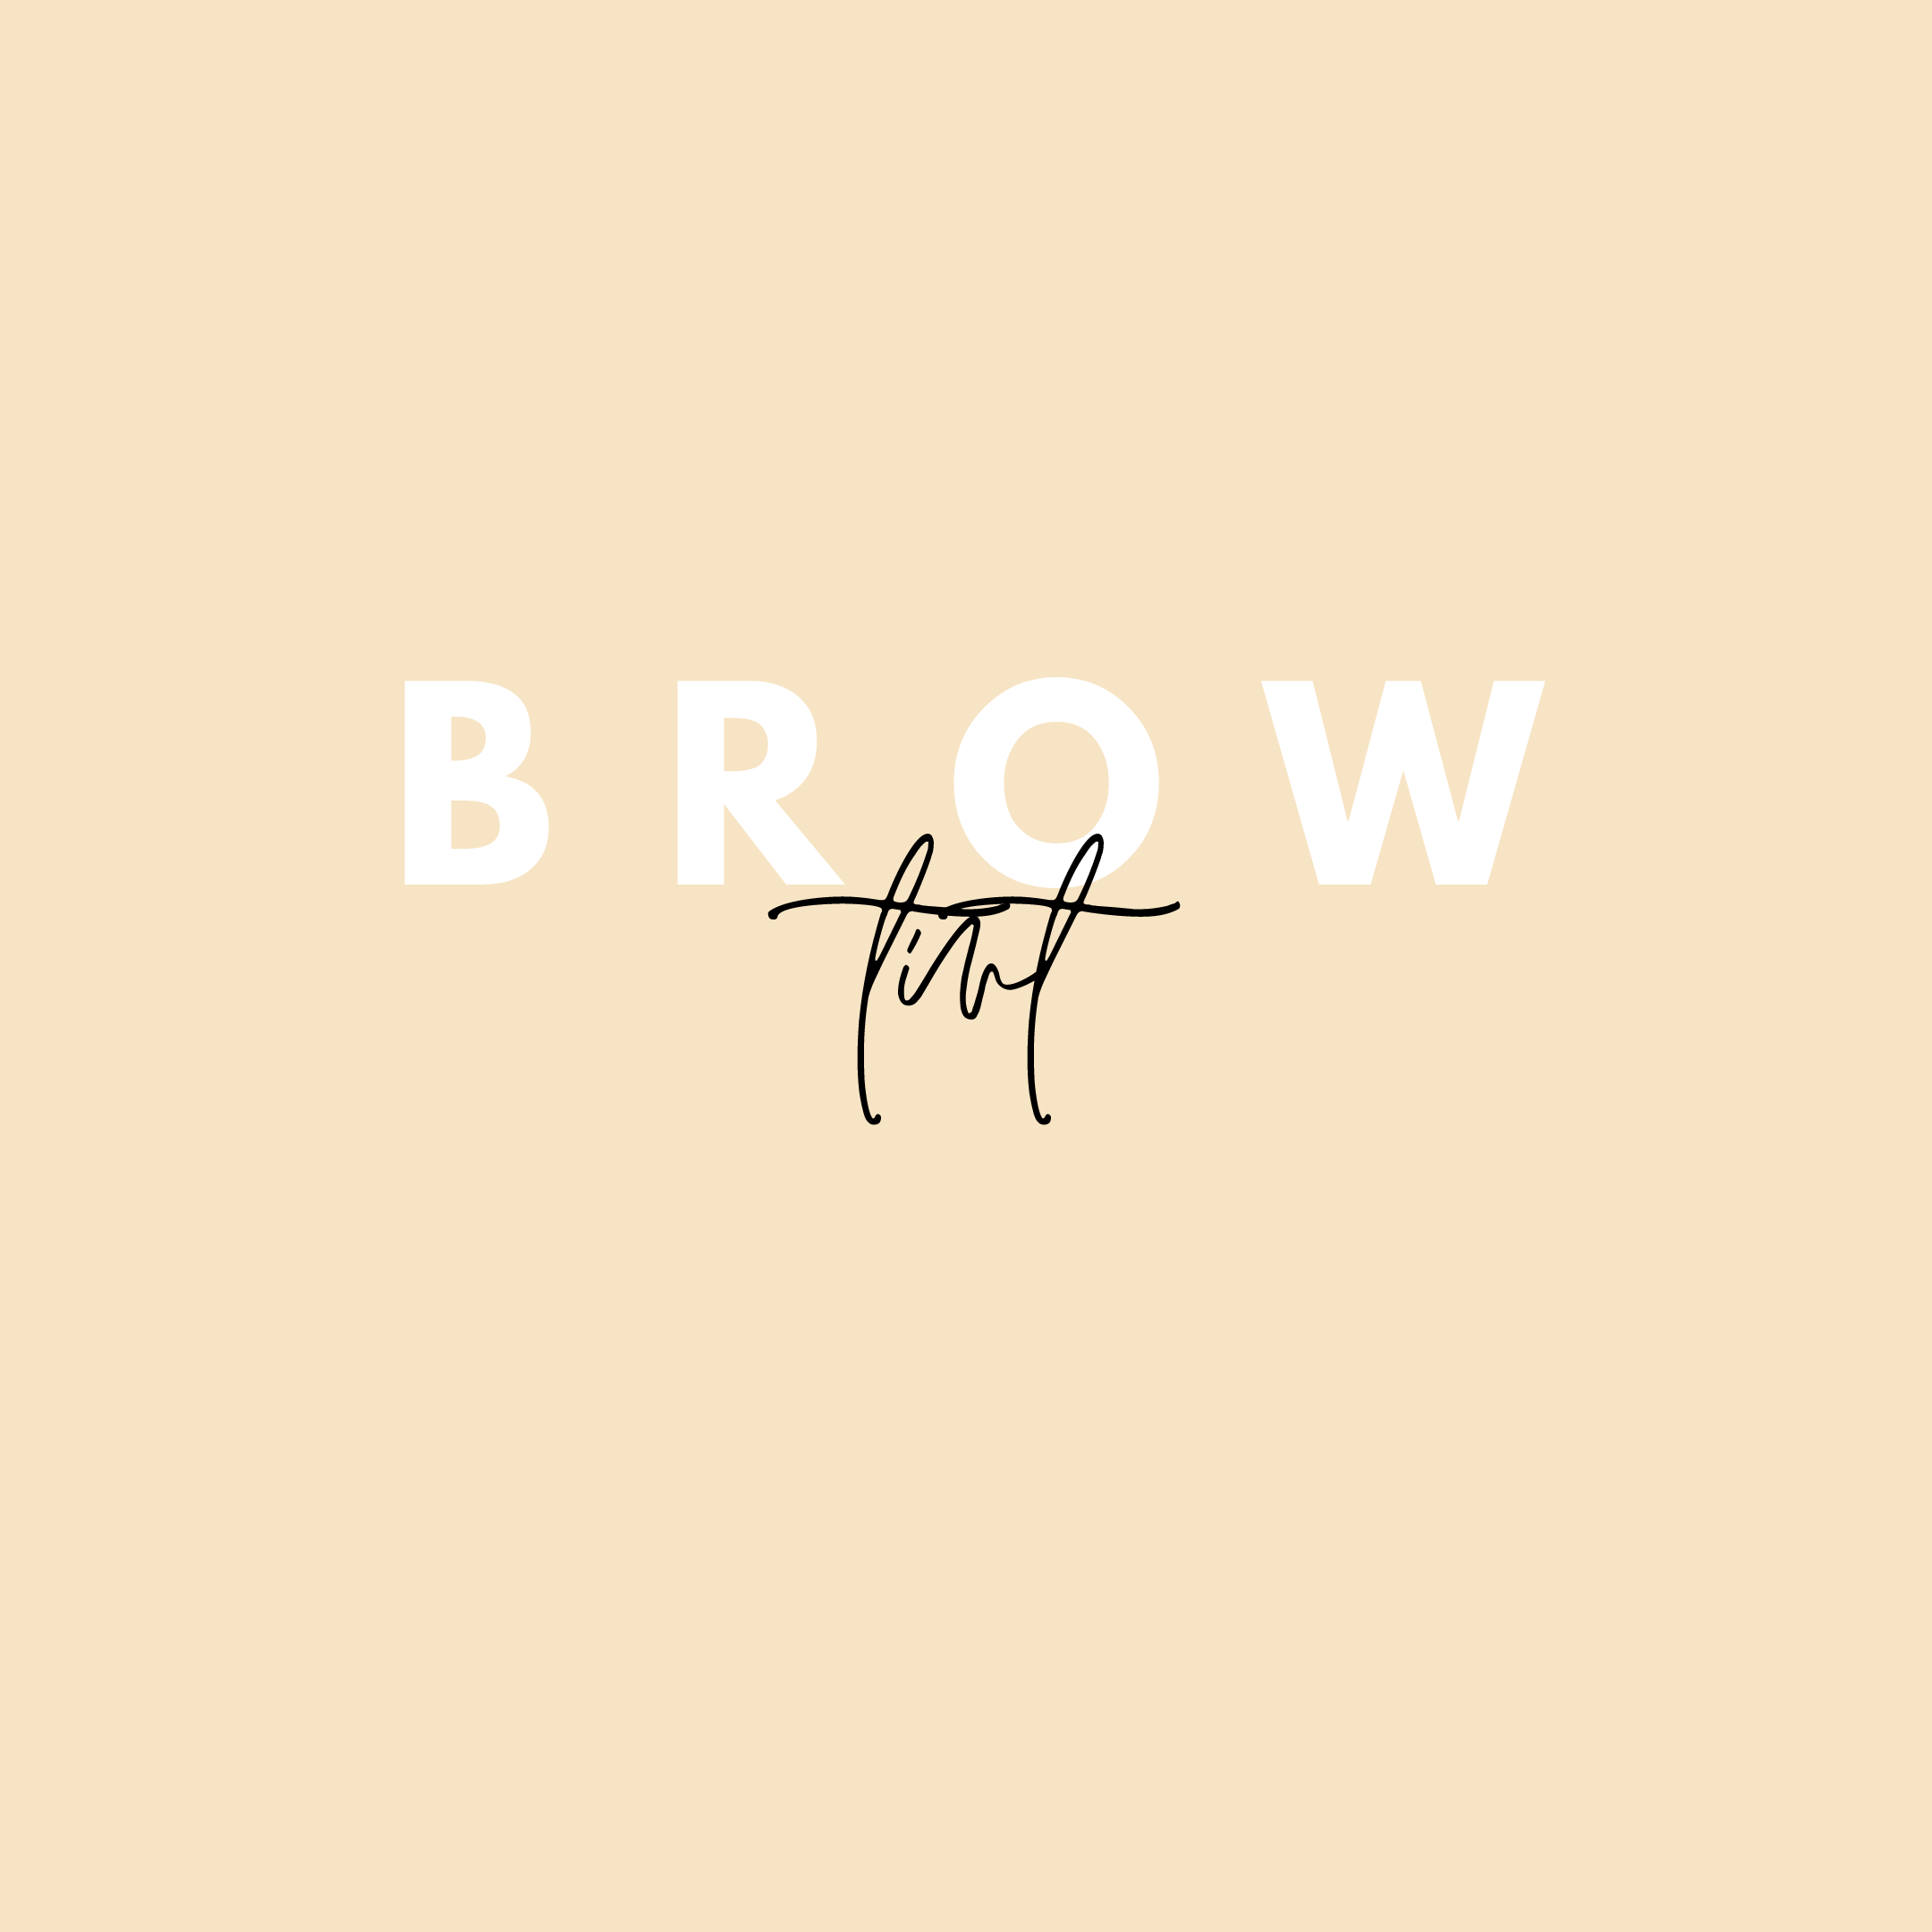 Brow Tint